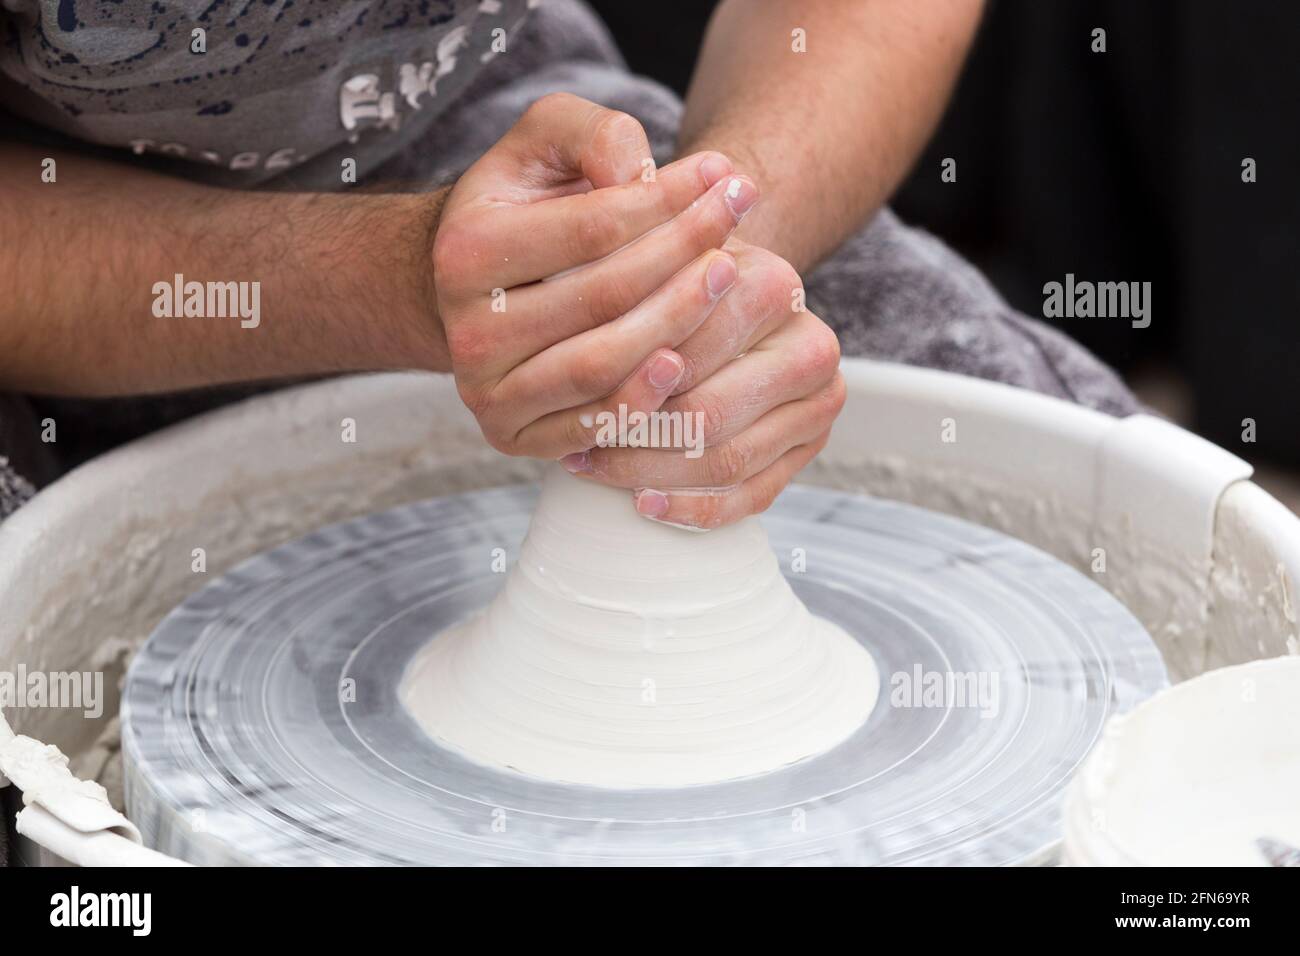 Potiers mains habilement lever / lever / soulever l'argile centrée avant de lancer à la main une céramique jeté à la main pot de vase fait sur une roue de rotation. Angleterre. ROYAUME-UNI (123) Banque D'Images